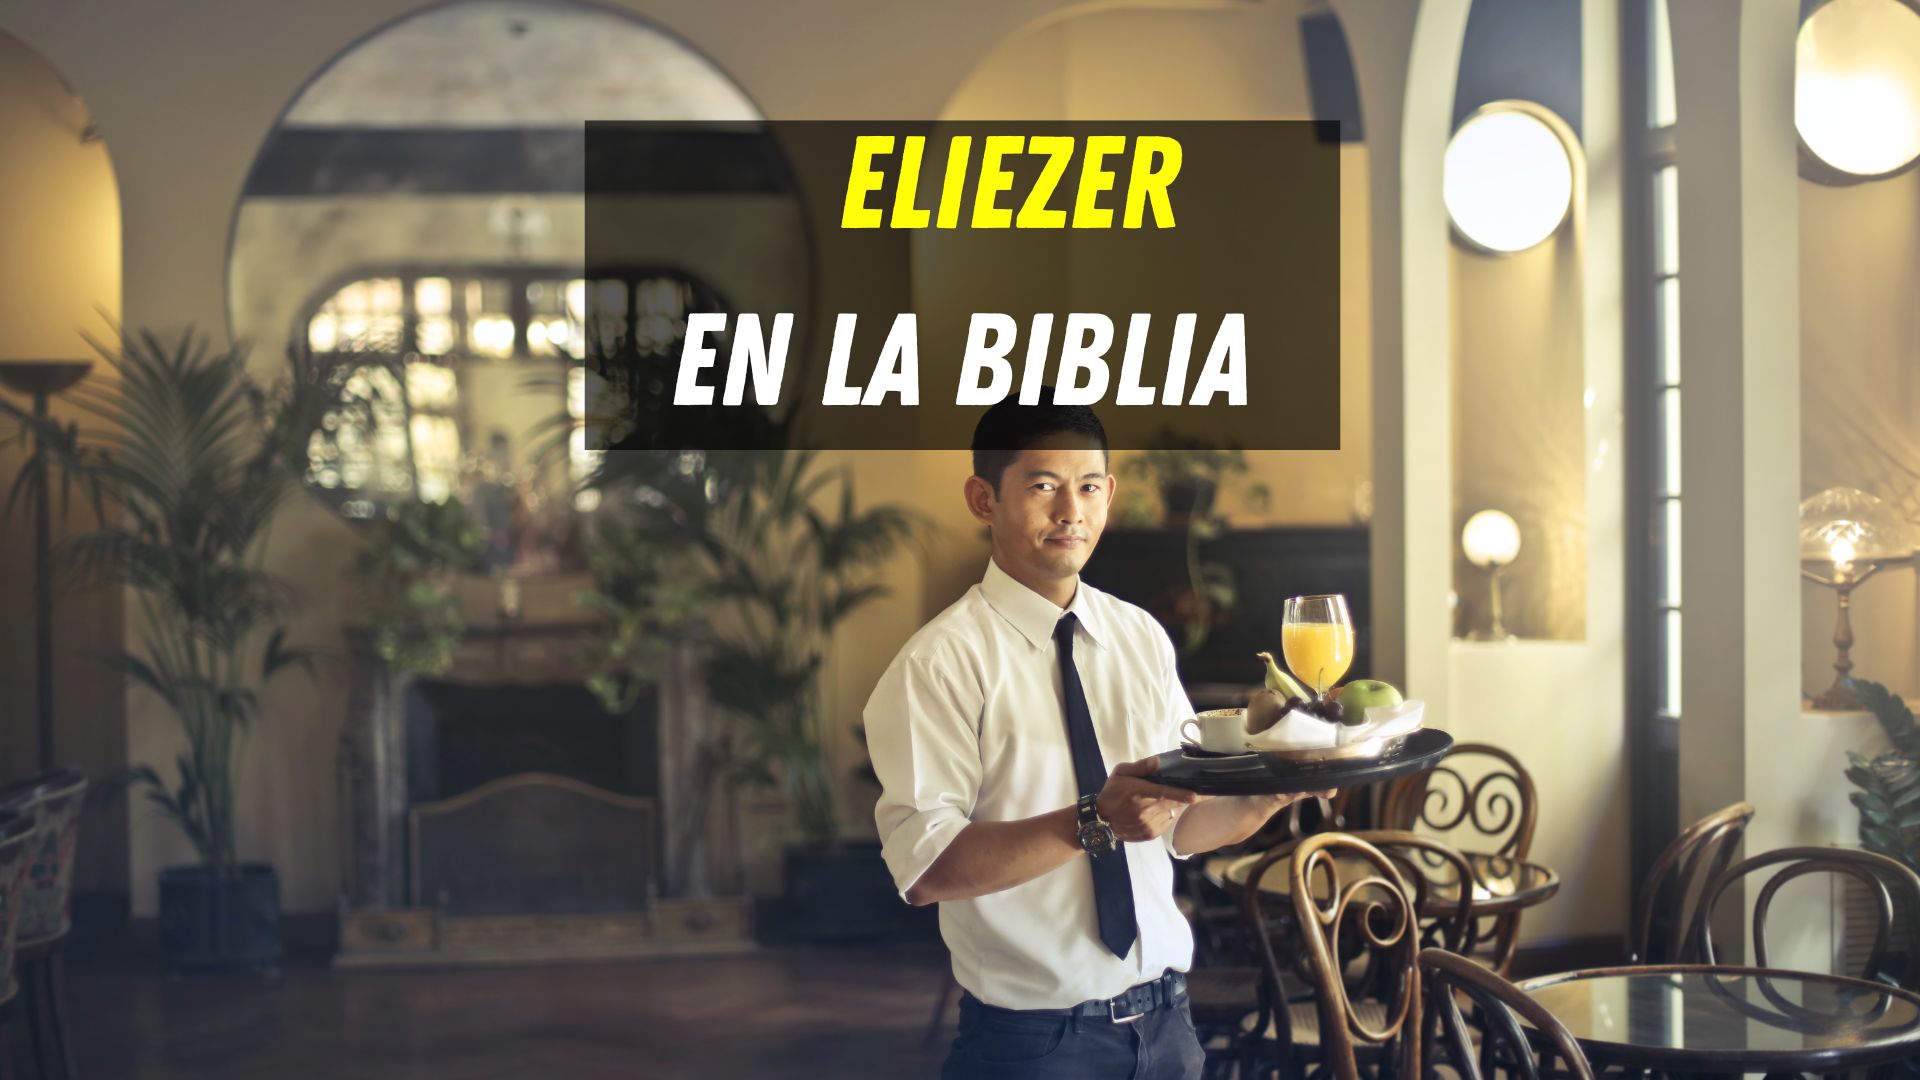 Quién era Eliezer en la Biblia